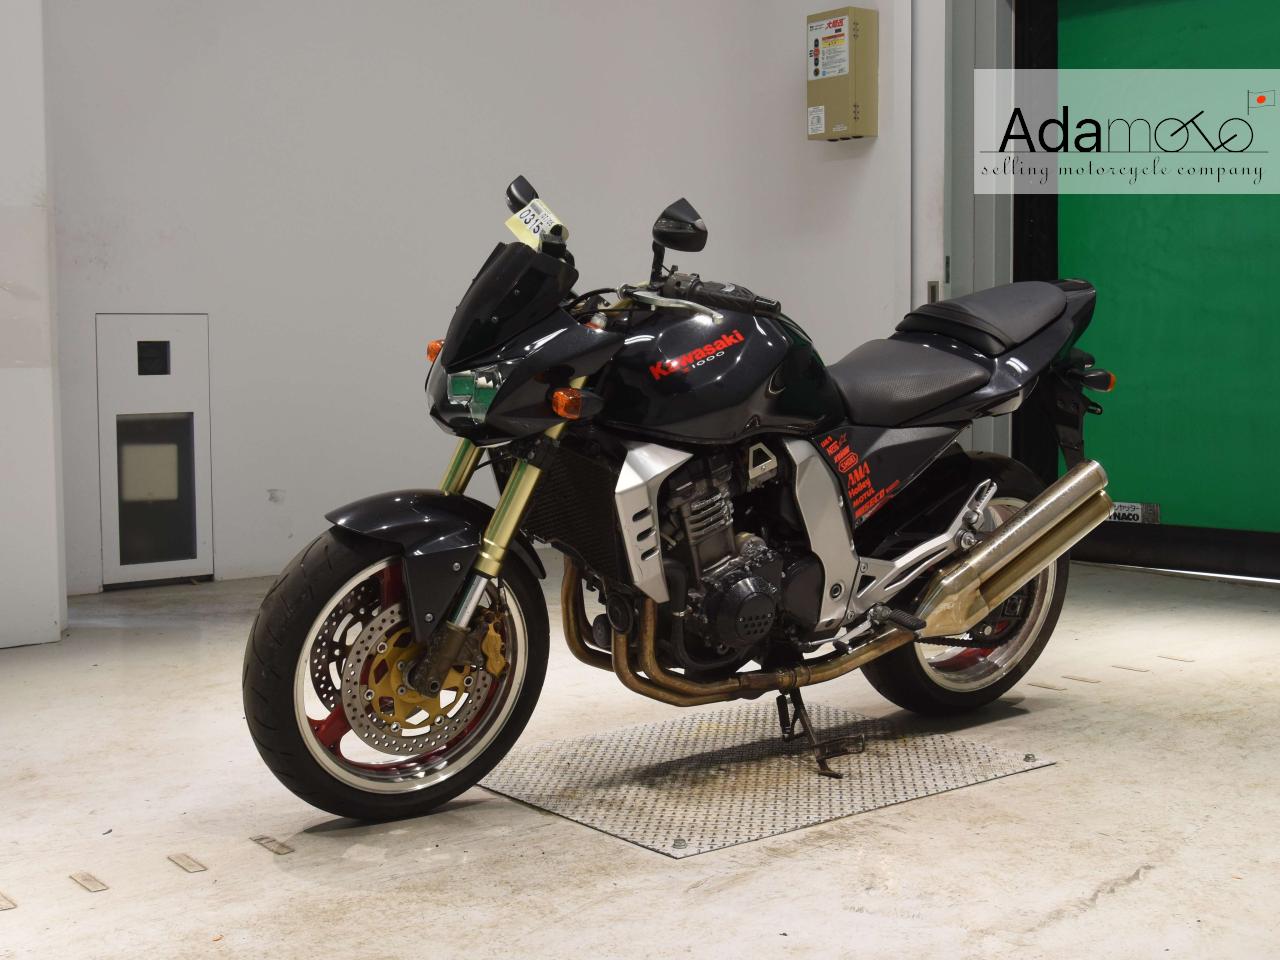 Kawasaki Z1000 5A - Adamoto - Motorcycles from Japan